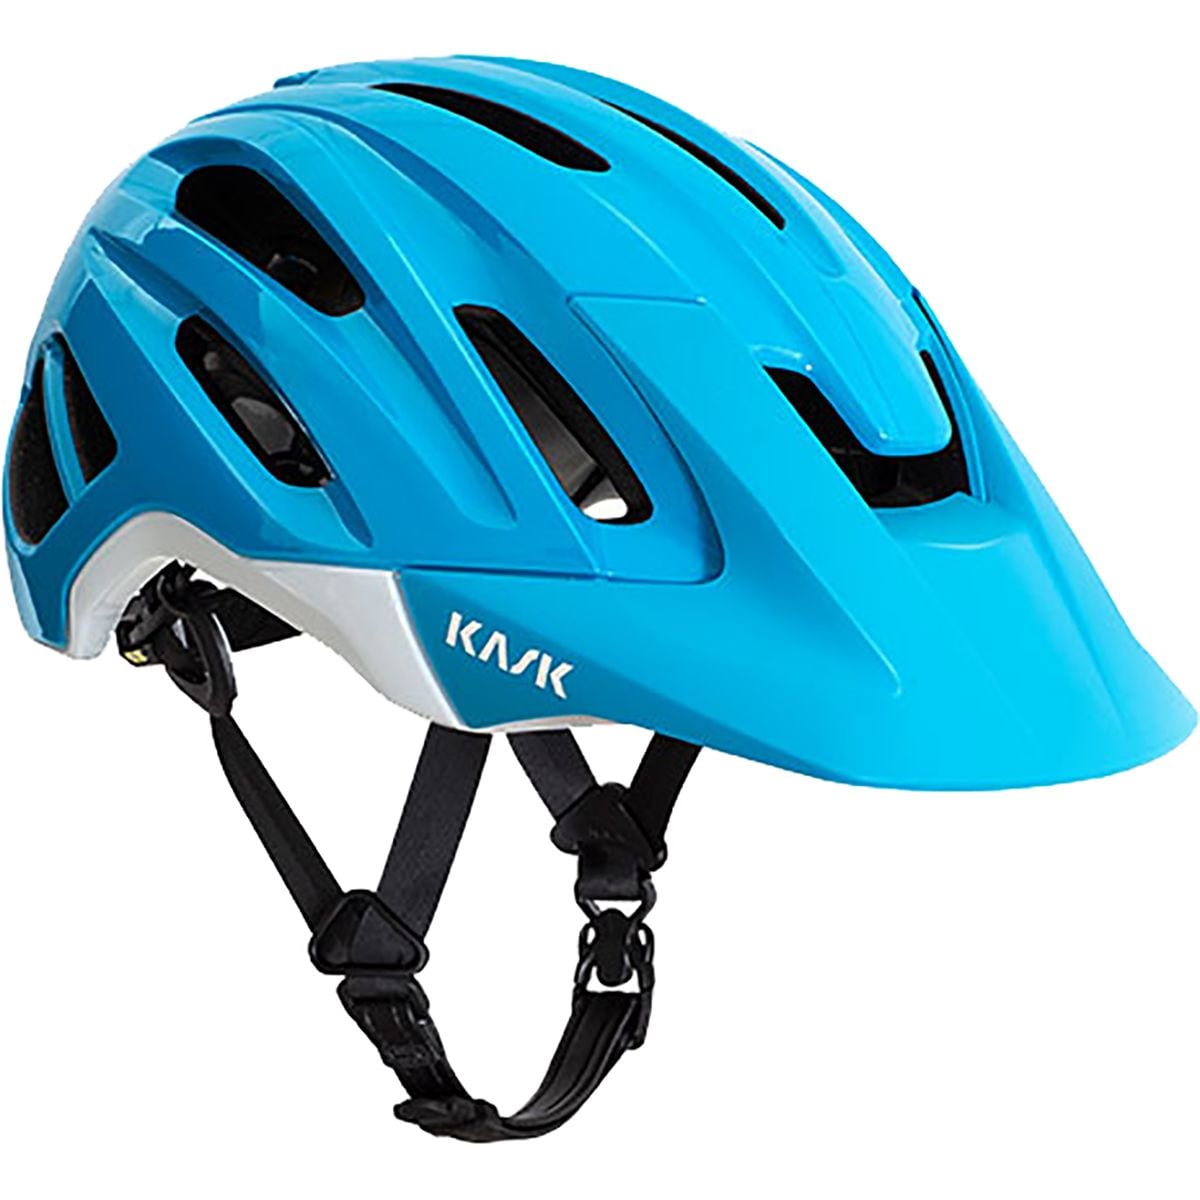 Велосипедный шлем caipi Kask, синий